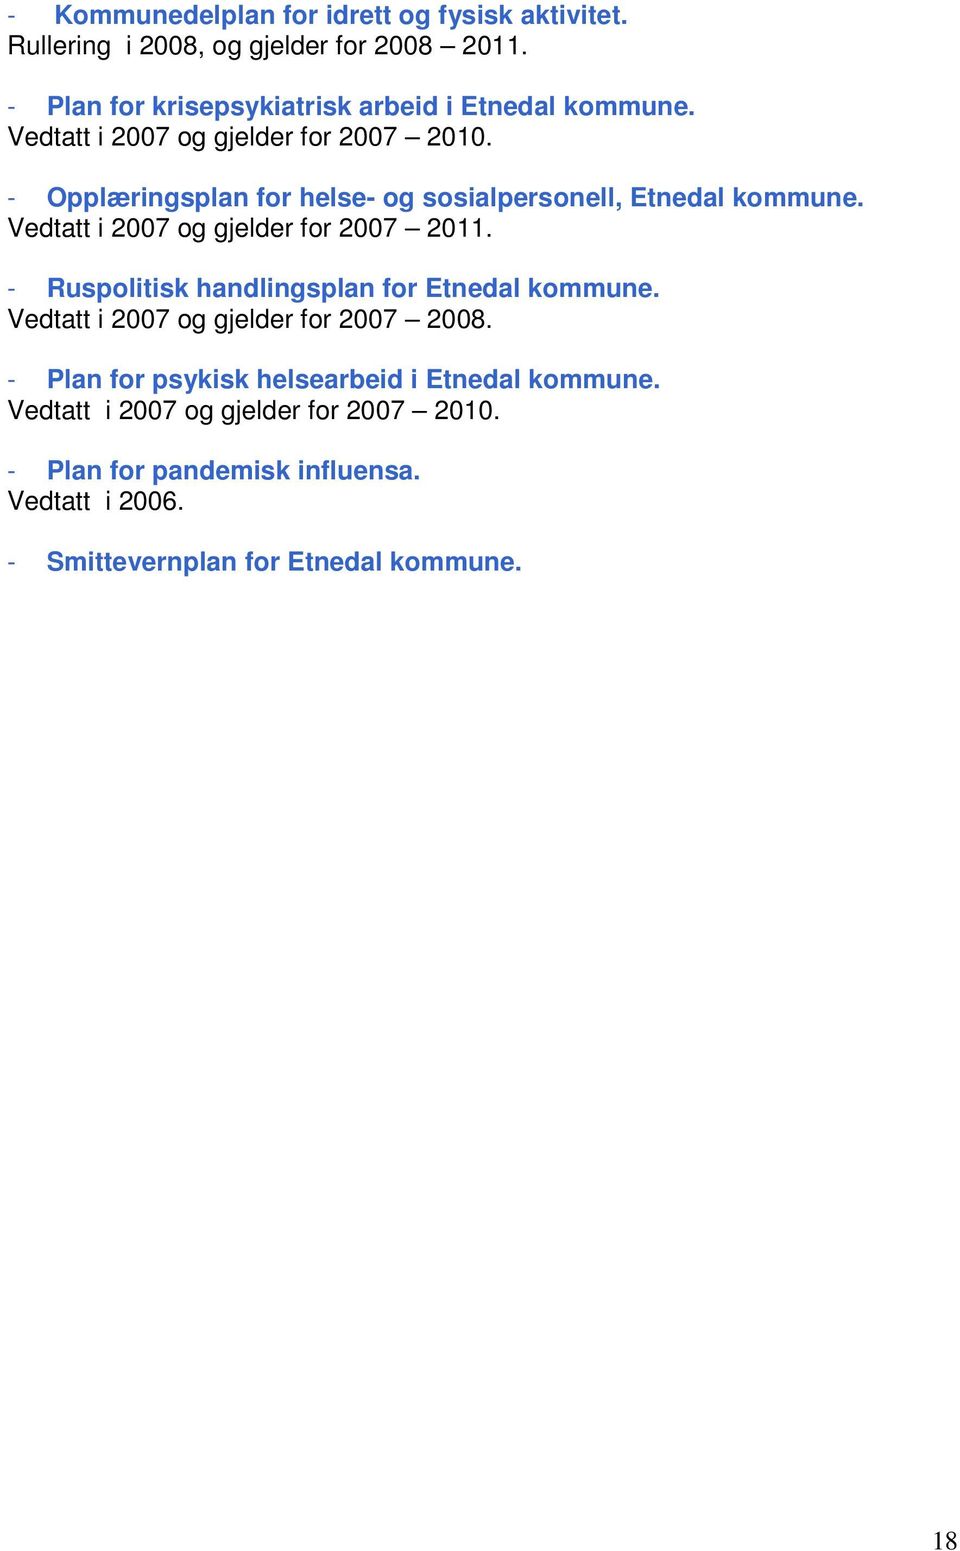 - Opplæringsplan for helse- og sosialpersonell, Etnedal kommune. Vedtatt i 2007 og gjelder for 2007 2011.